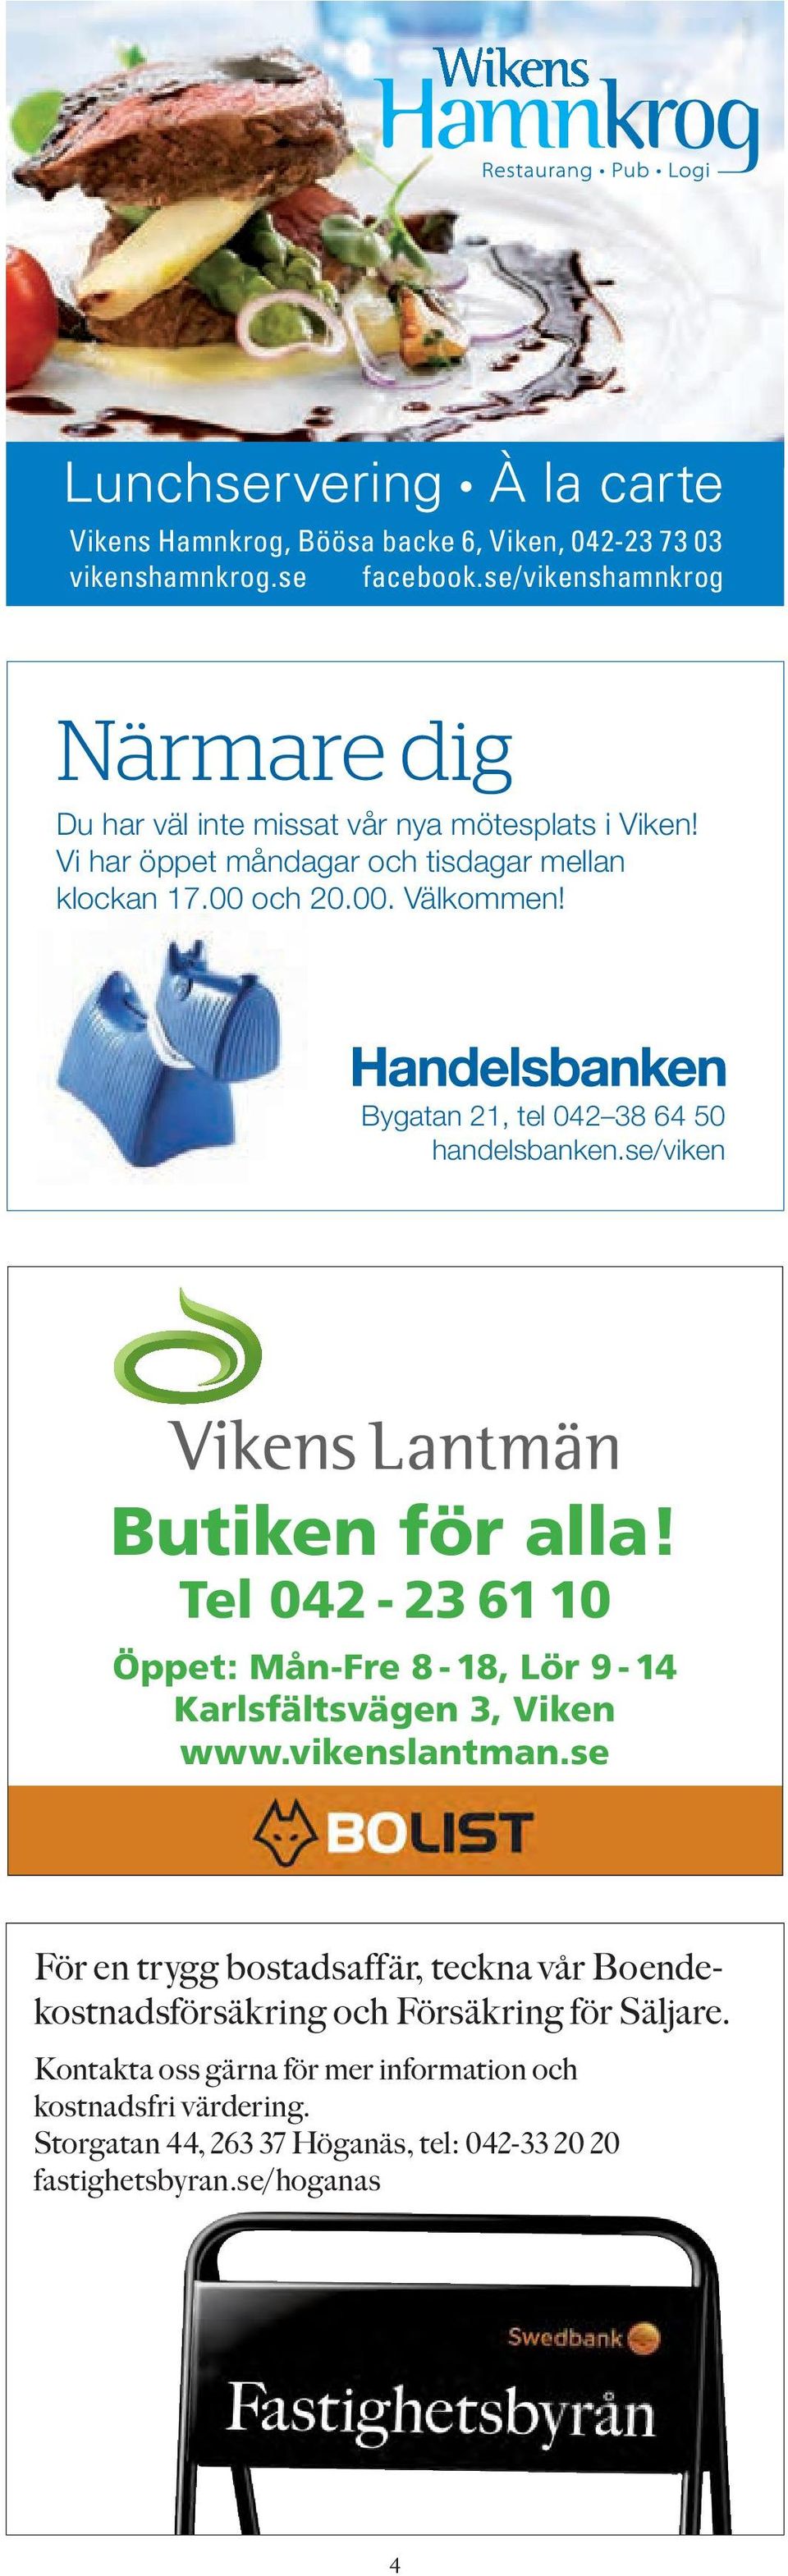 Bygatan 21, tel 042 38 64 50 handelsbanken.se/viken Annons_122x88.indd 1 2013-01-04 10:25:28 Butiken för alla!